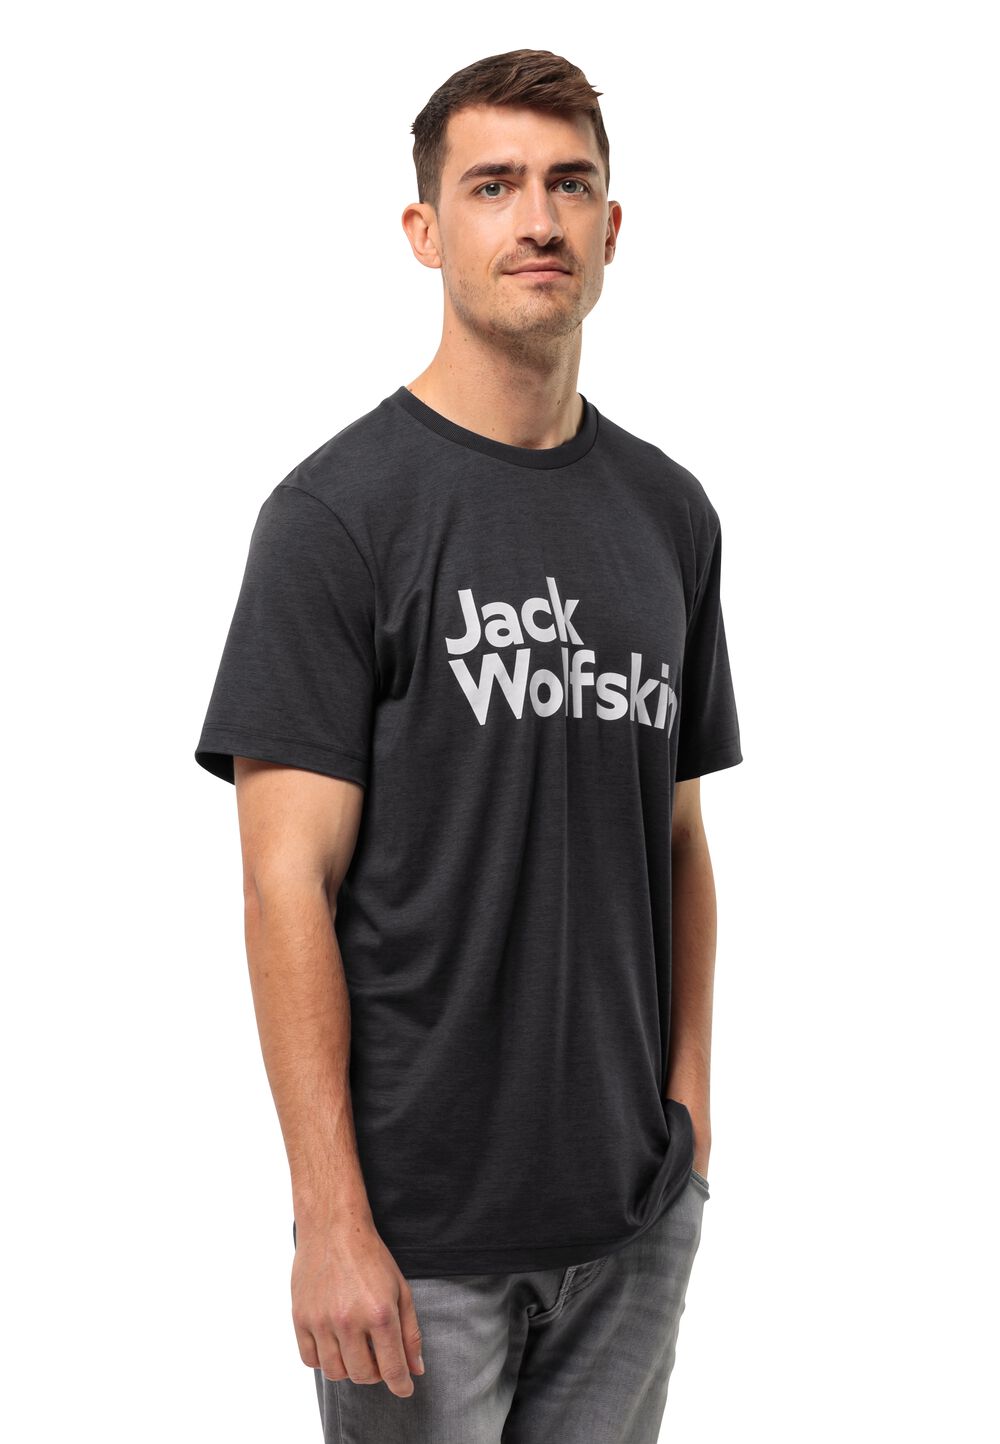 Jack Wolfskin Funktionsshirt Herren Brand T-Shirt Men L schwarz black von Jack Wolfskin